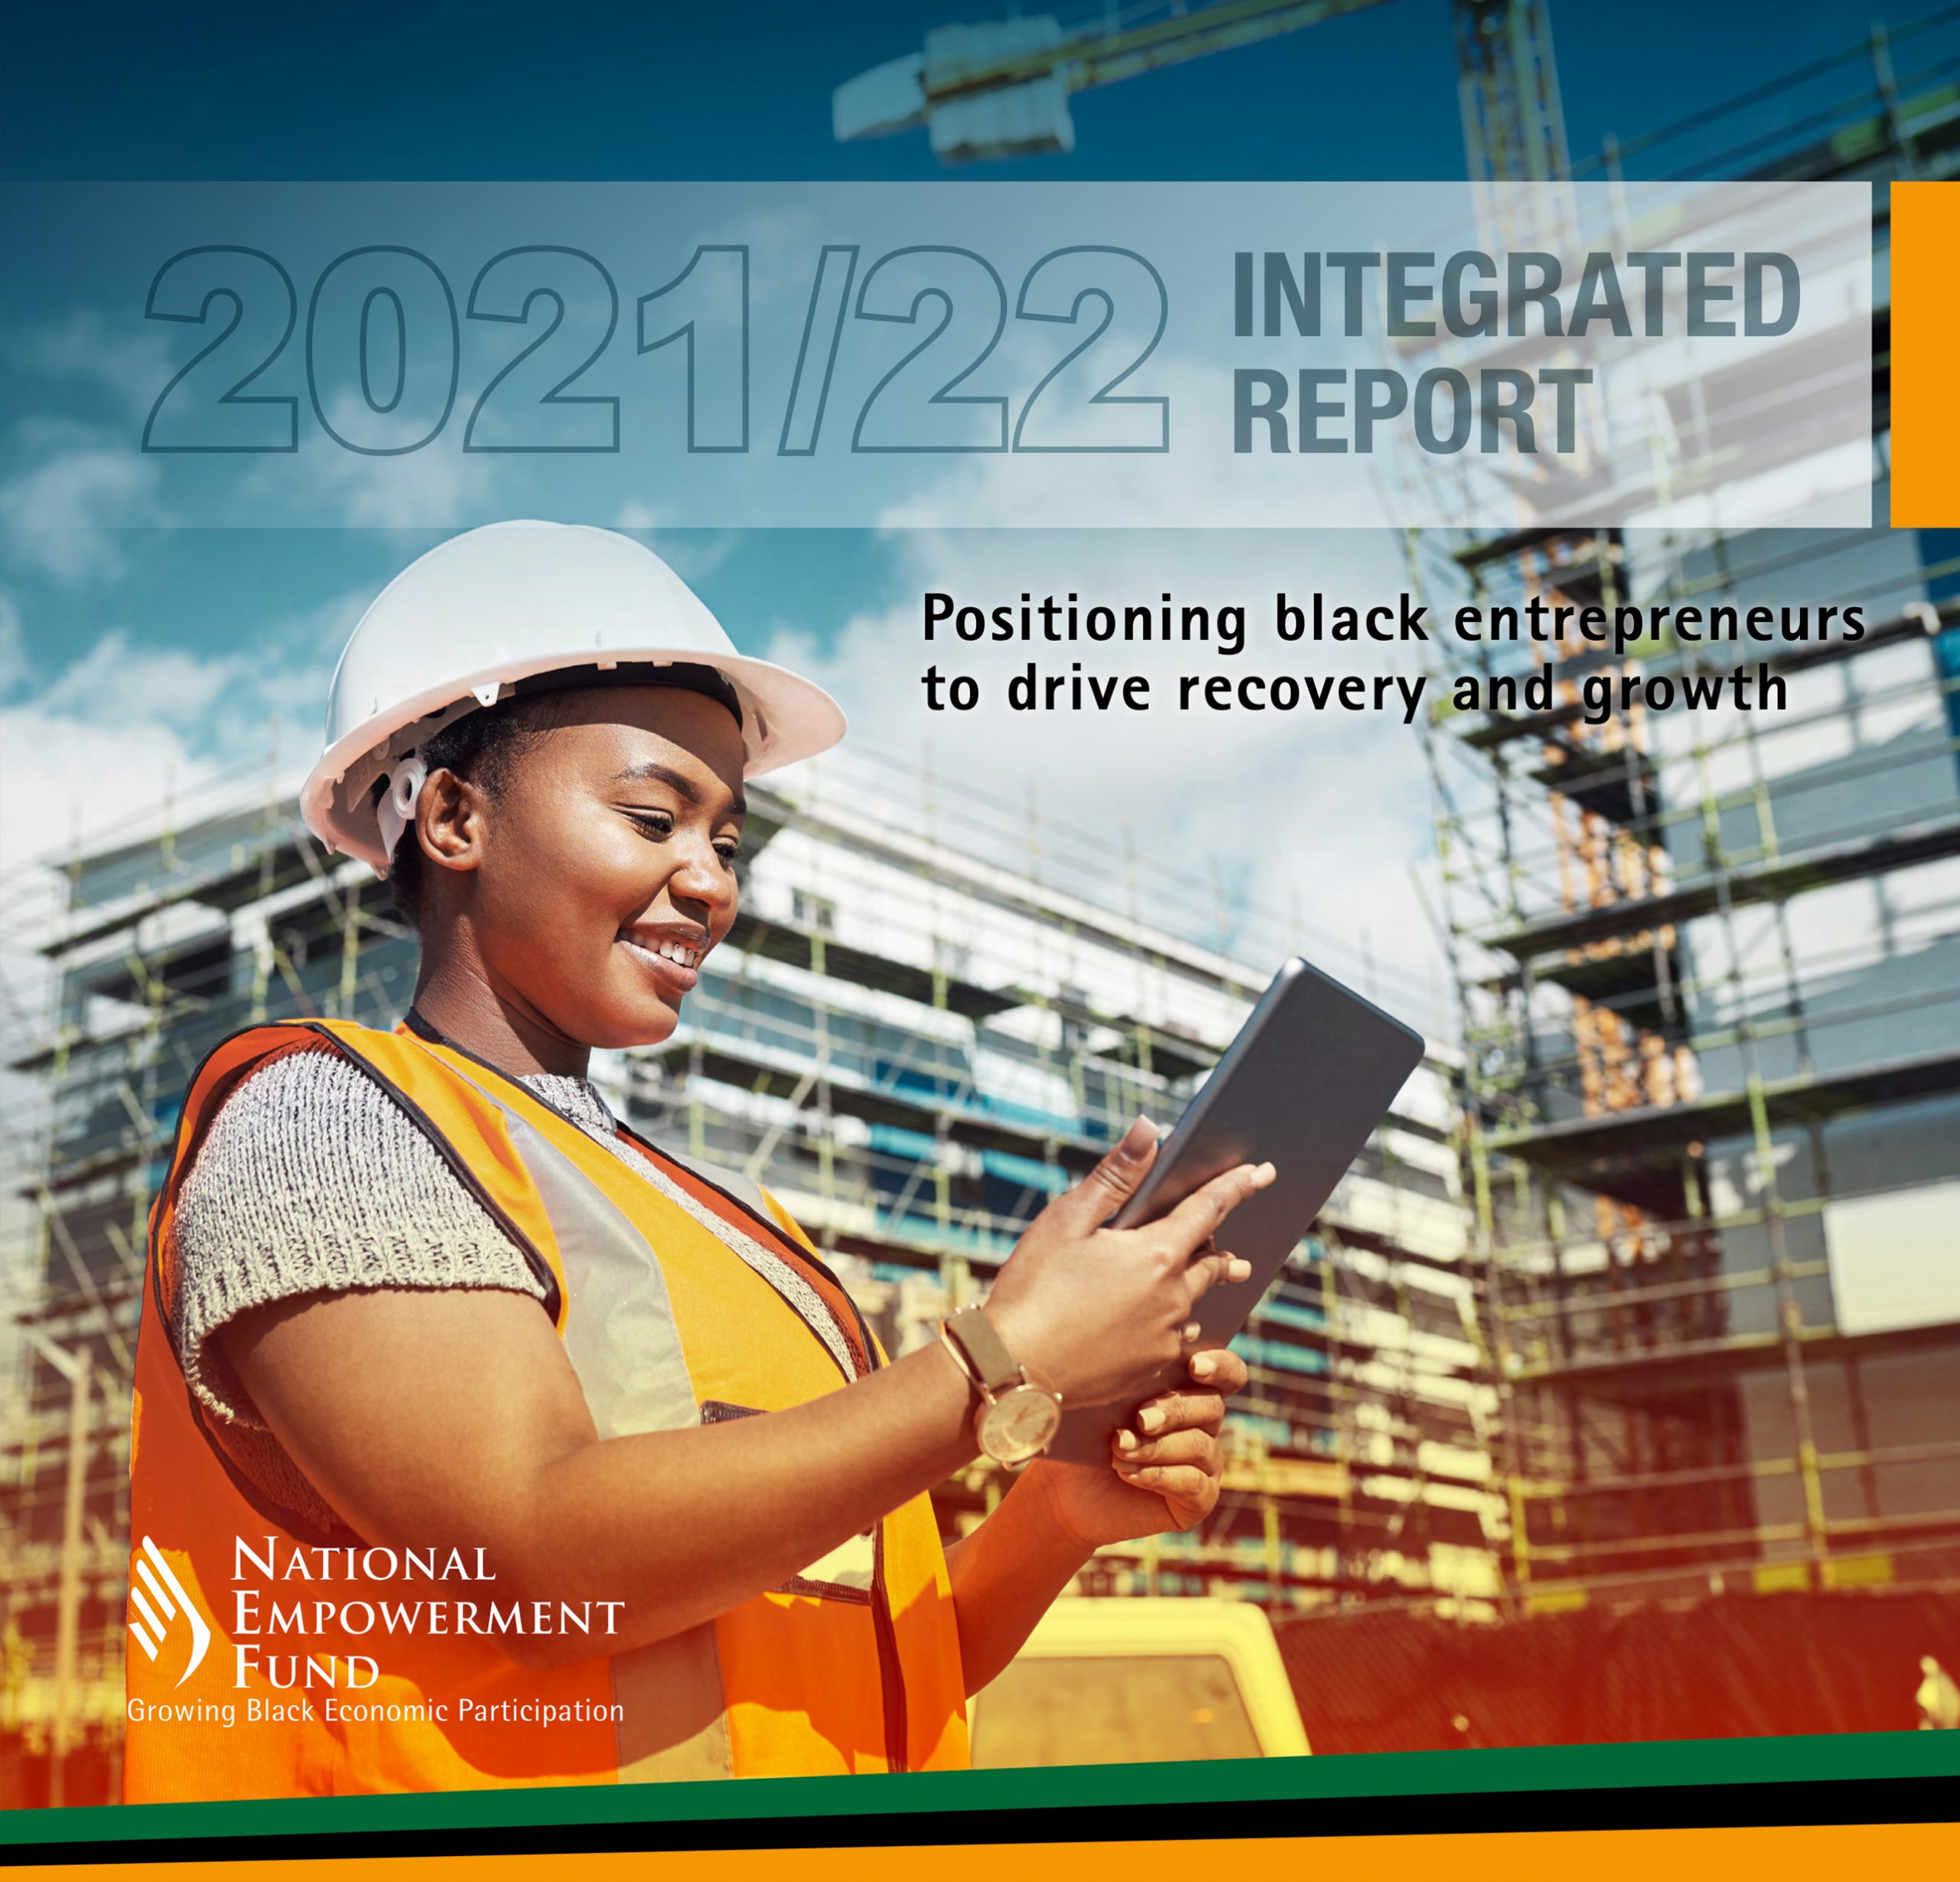 Intergrated Report 2021/22